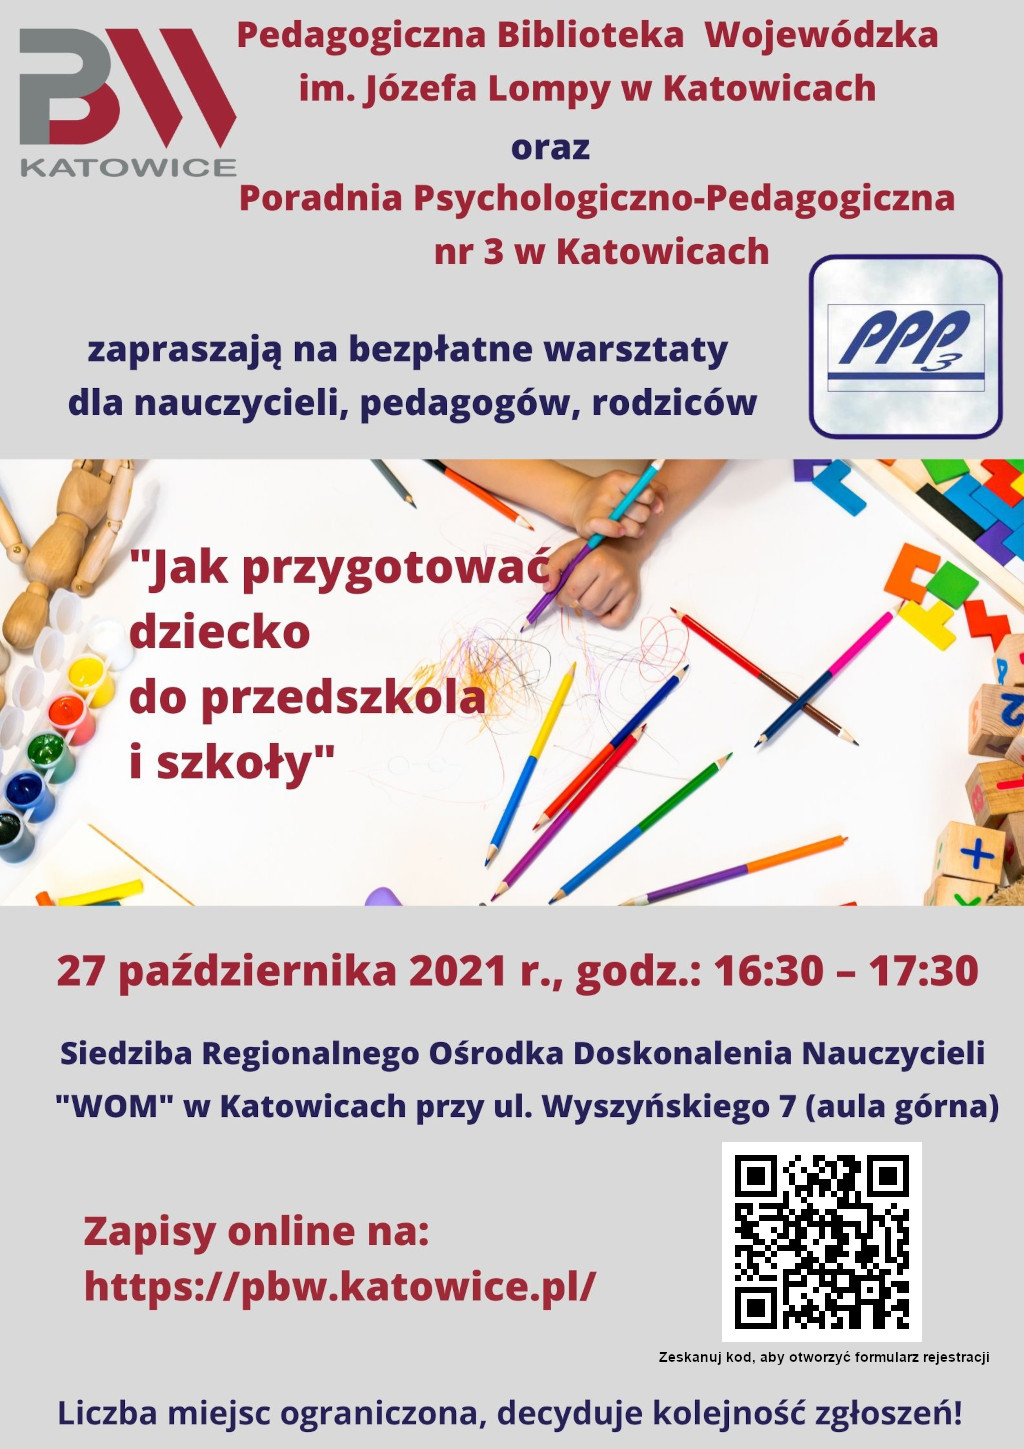 warsztaty Jak przygotować dziecko do szkoły i przedszkola - plakat informacyjny